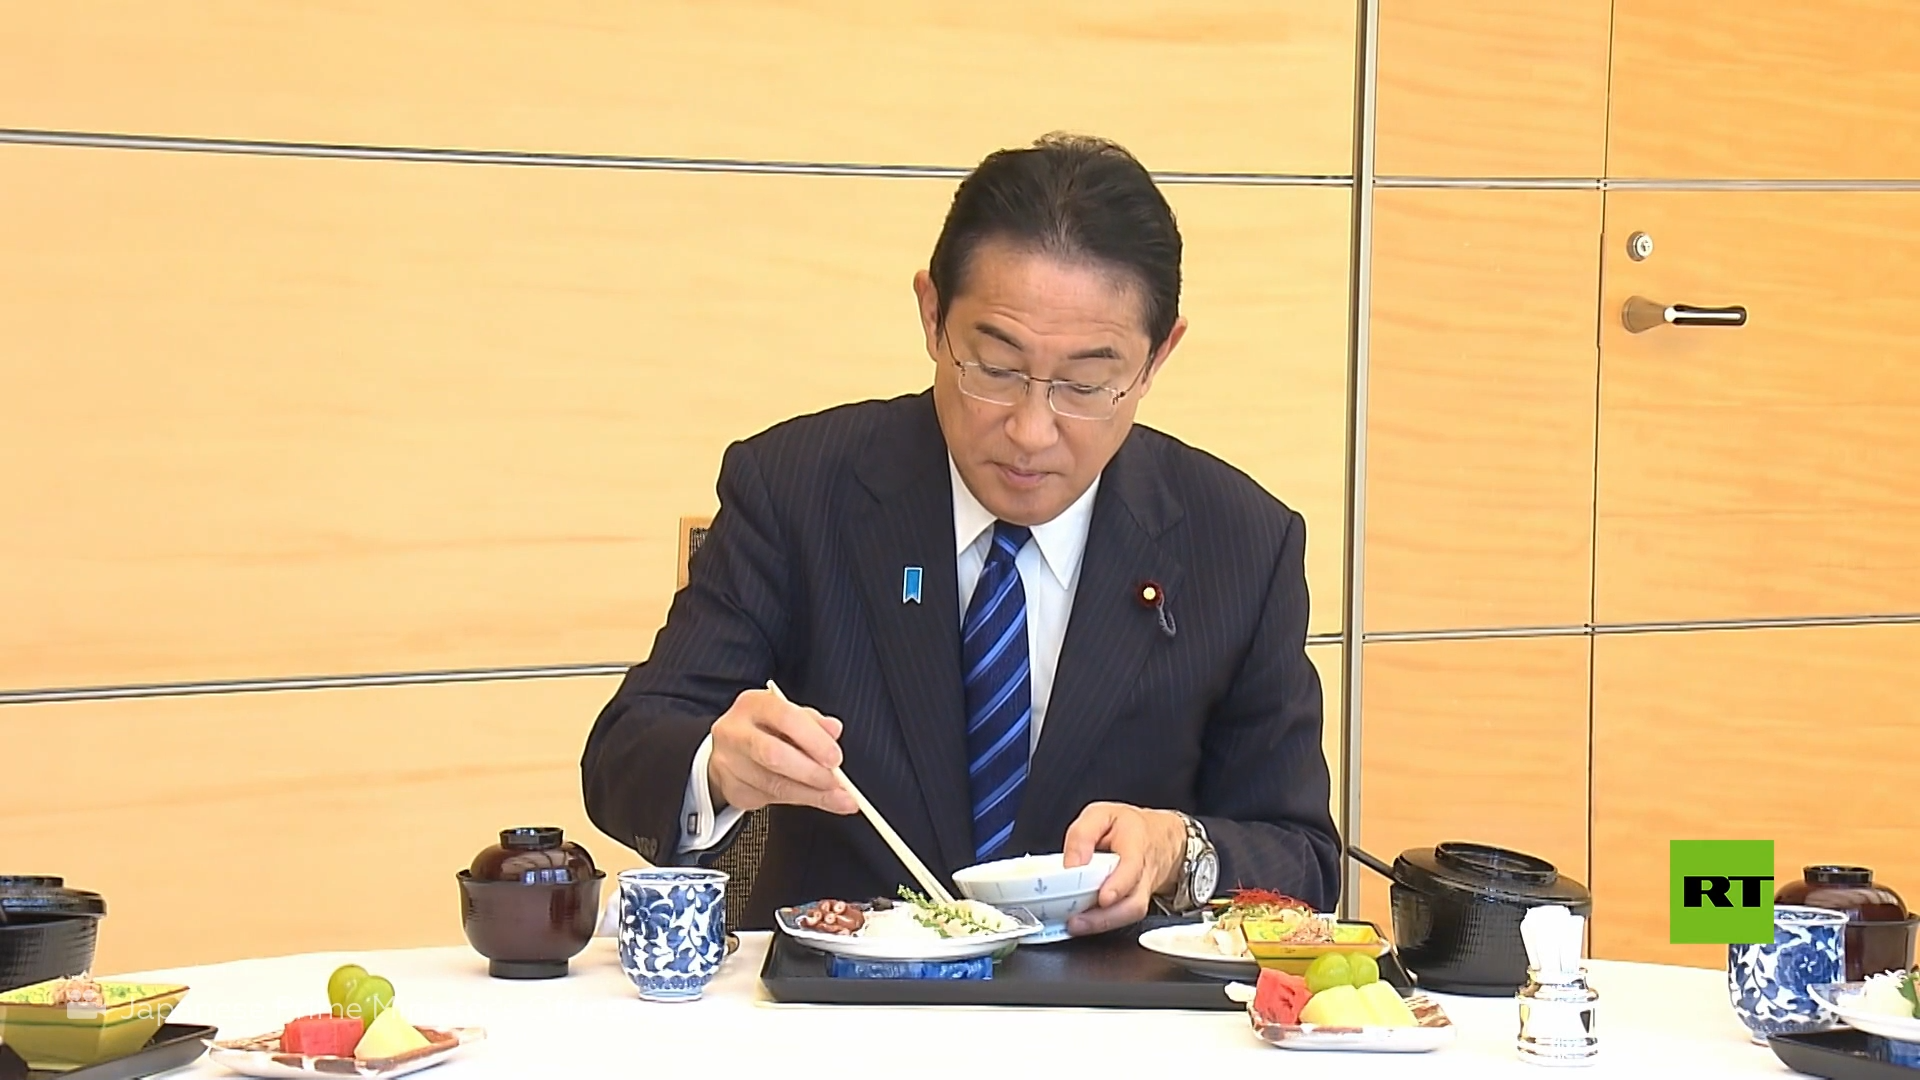 رئيس الحكومة اليابانية يتناول أسماكا من فوكوشيما 